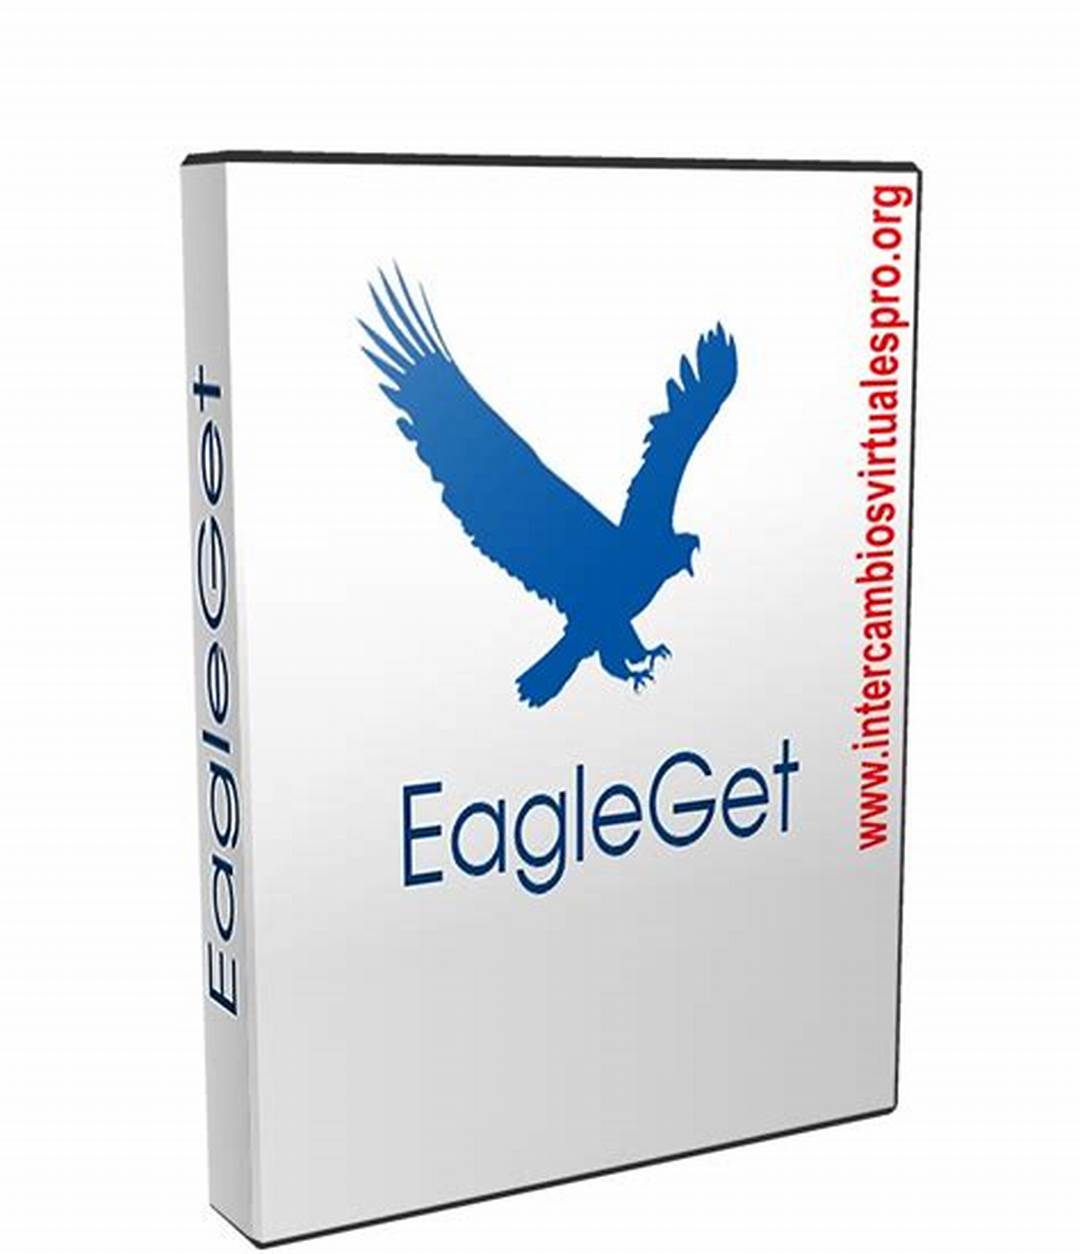 EagleGet poster